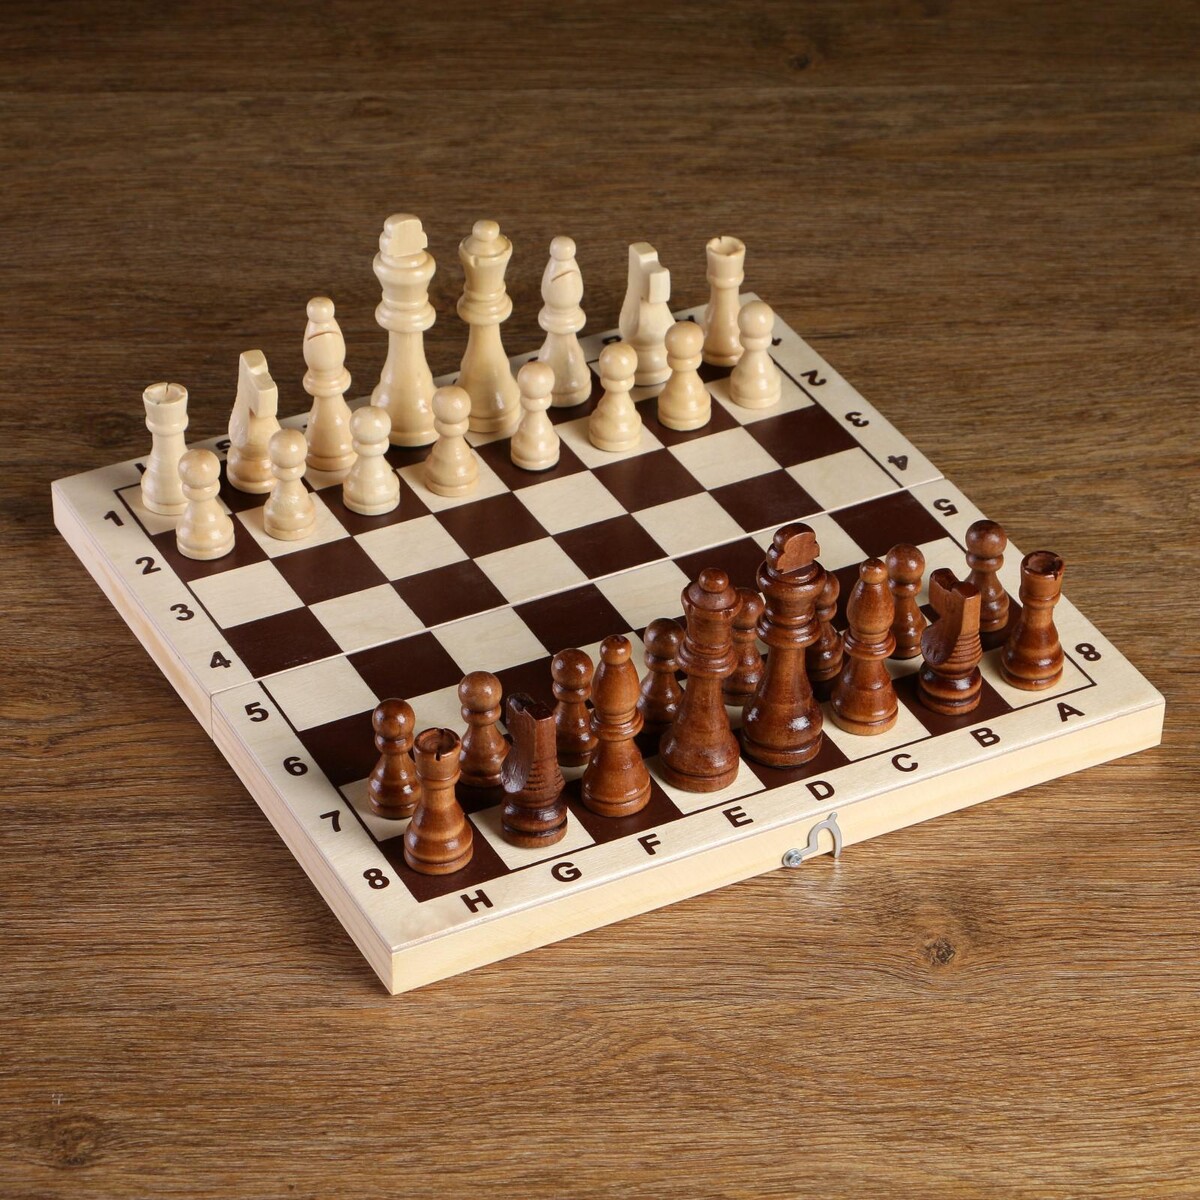 Шахматные фигуры, король h-8 см, пешка h-4 см король лир